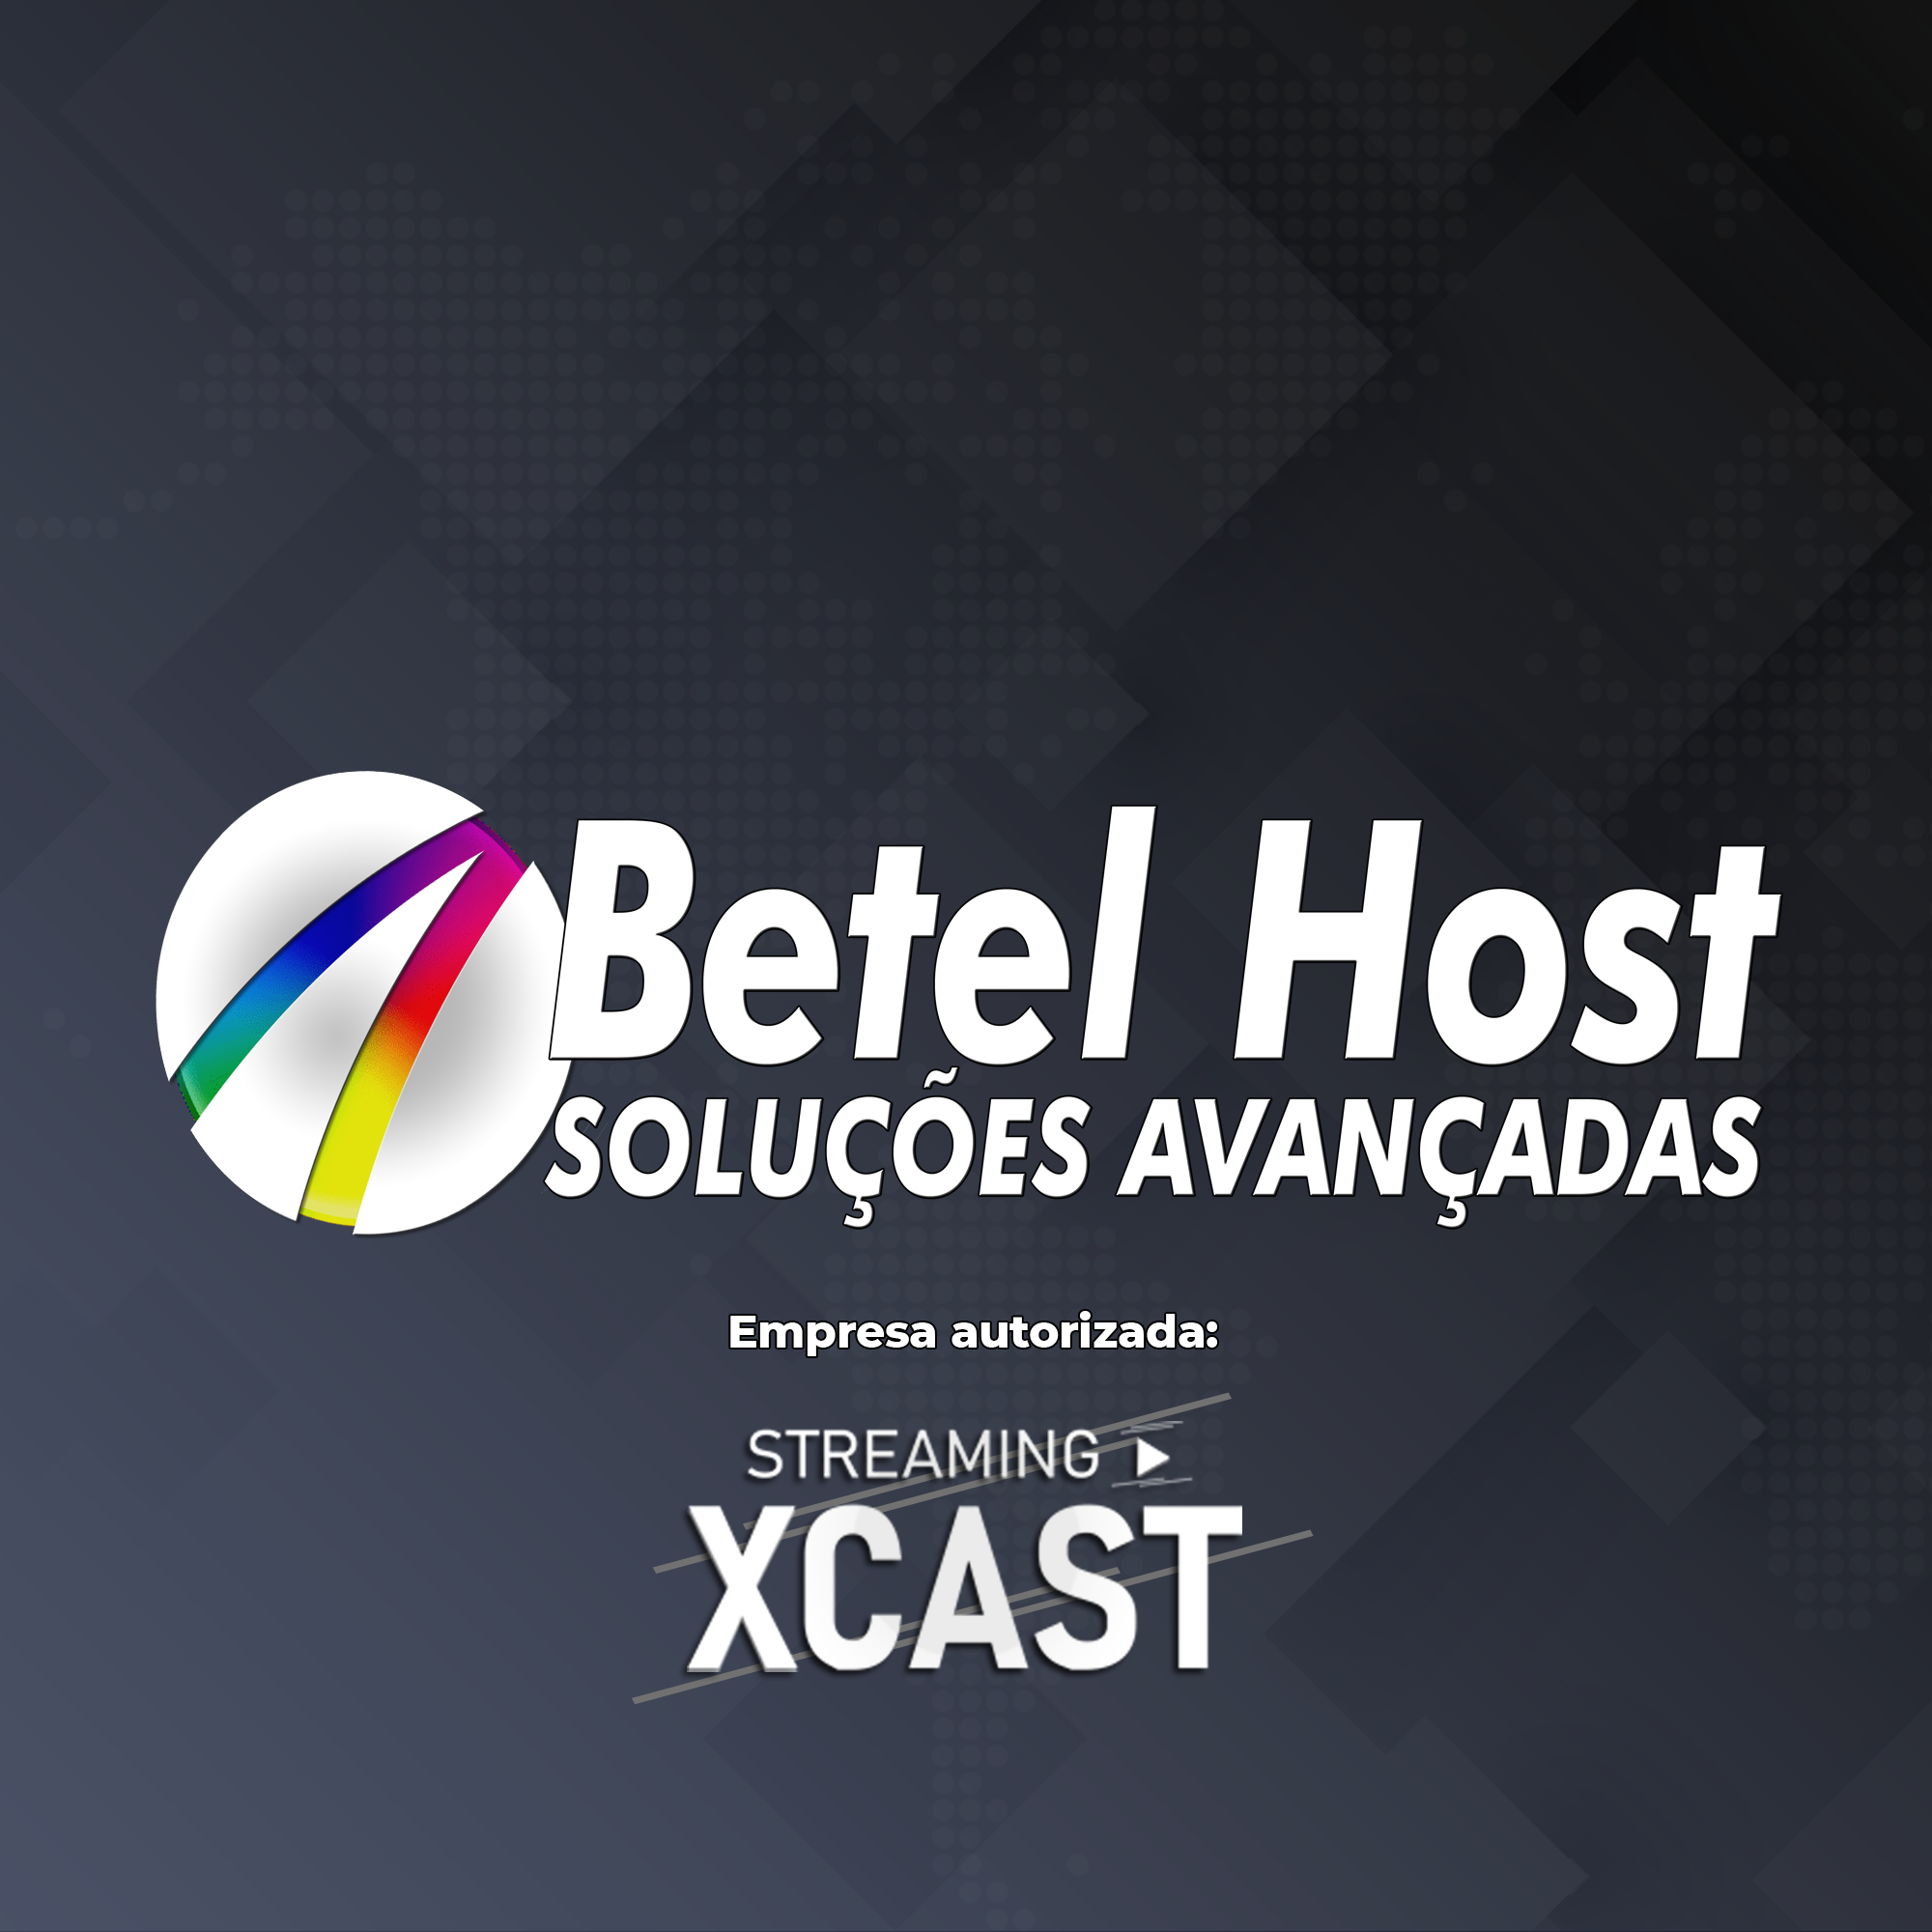 betelhost.com.br